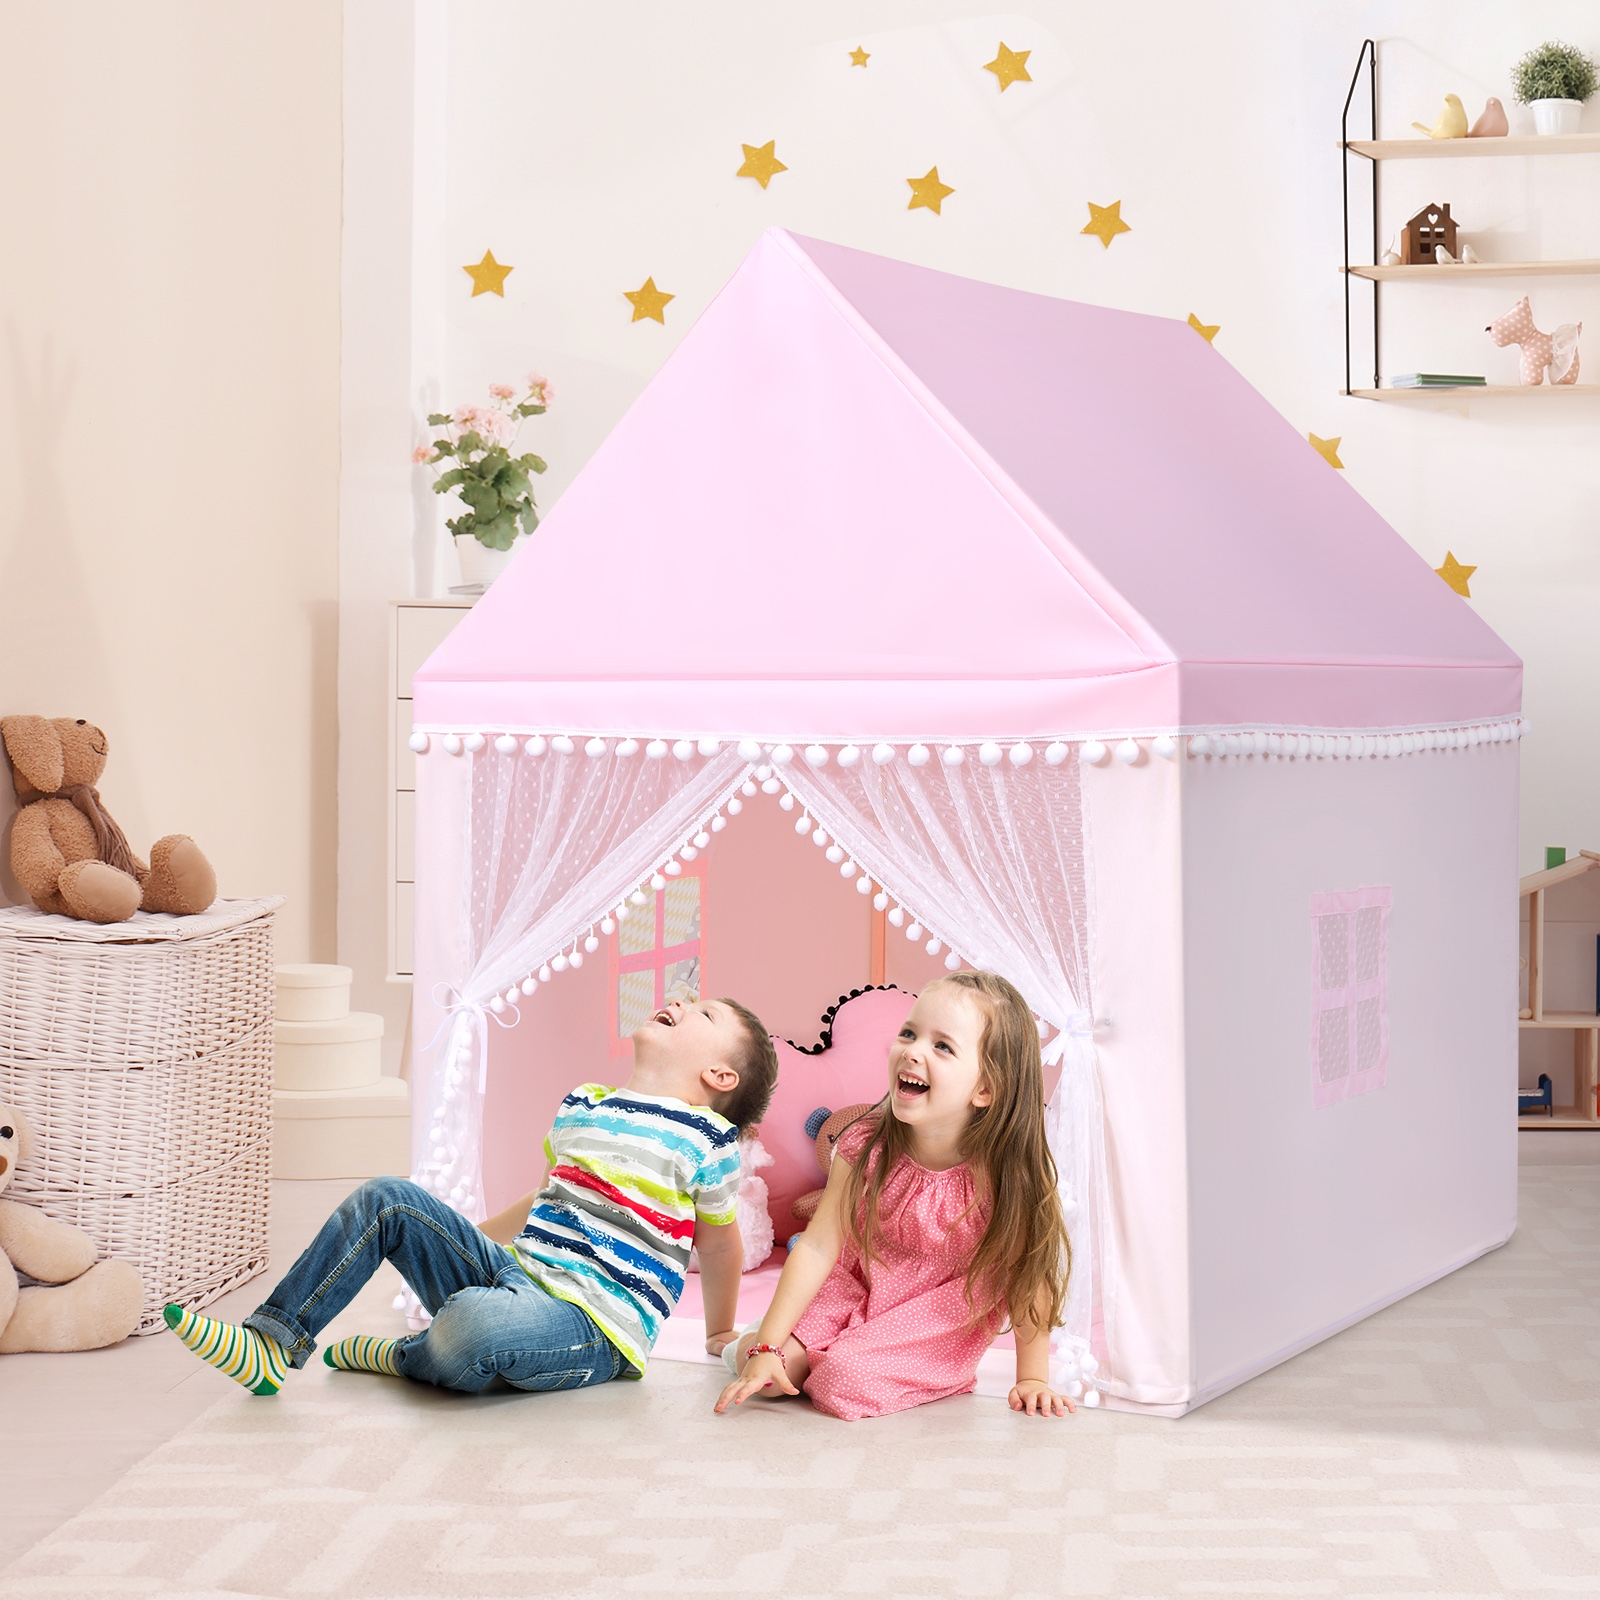 Costway Casetta giocattolo per bambini, Casa grande e resistente con solida struttura di legno Rosa